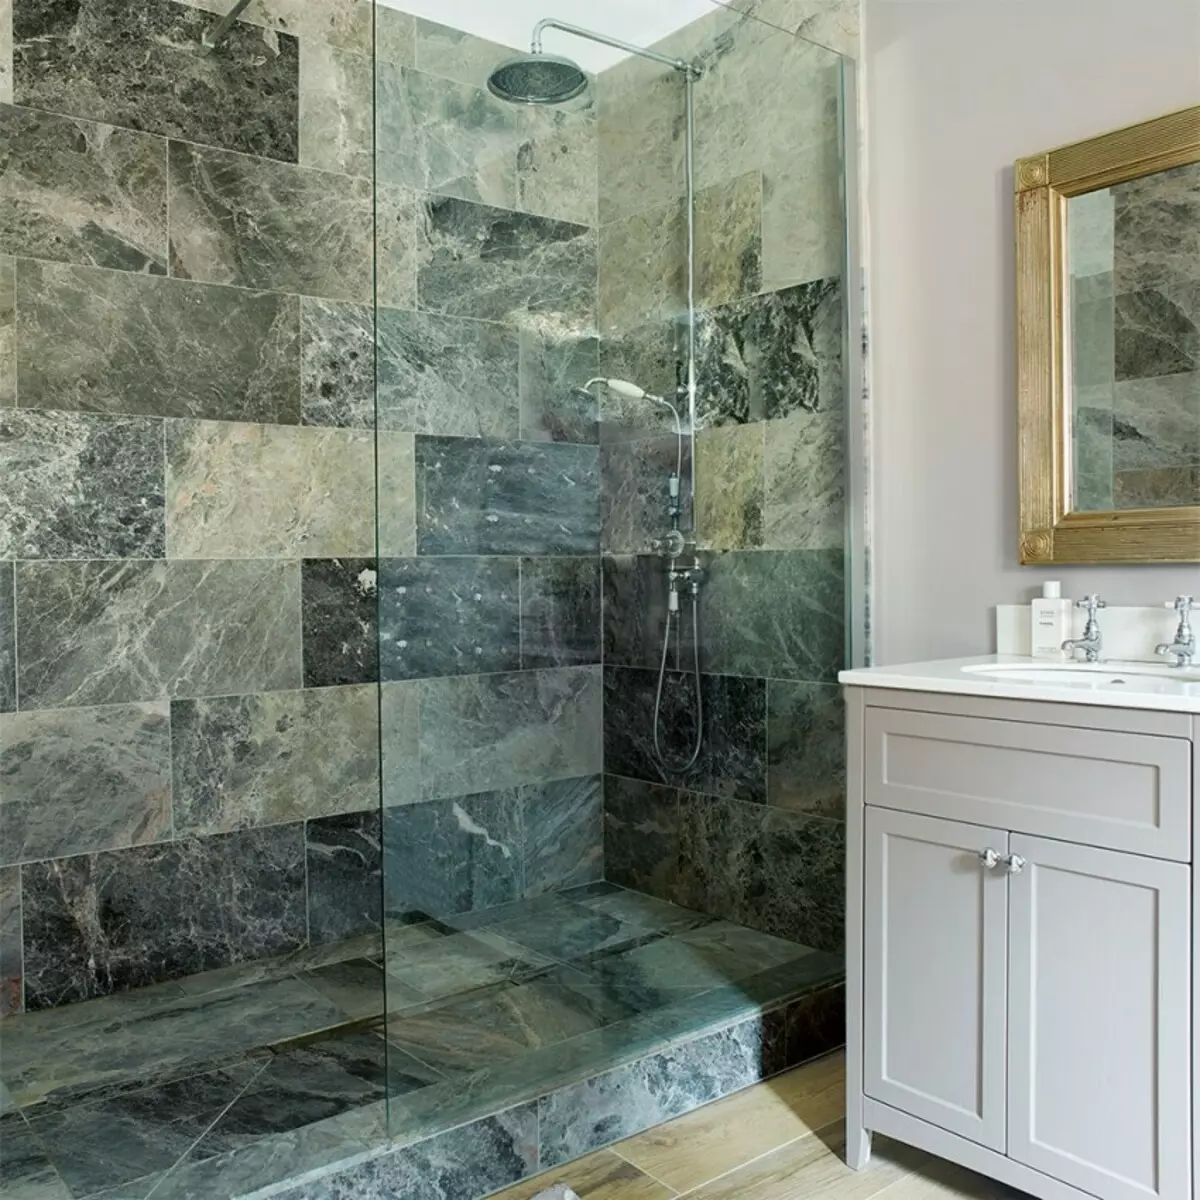 대리석 욕실 (98 장의 사진) : 방의 대리석 목욕탕, 욕실의 흰색 대리석과 나무의 조합, 인테리어의 예 10185_84